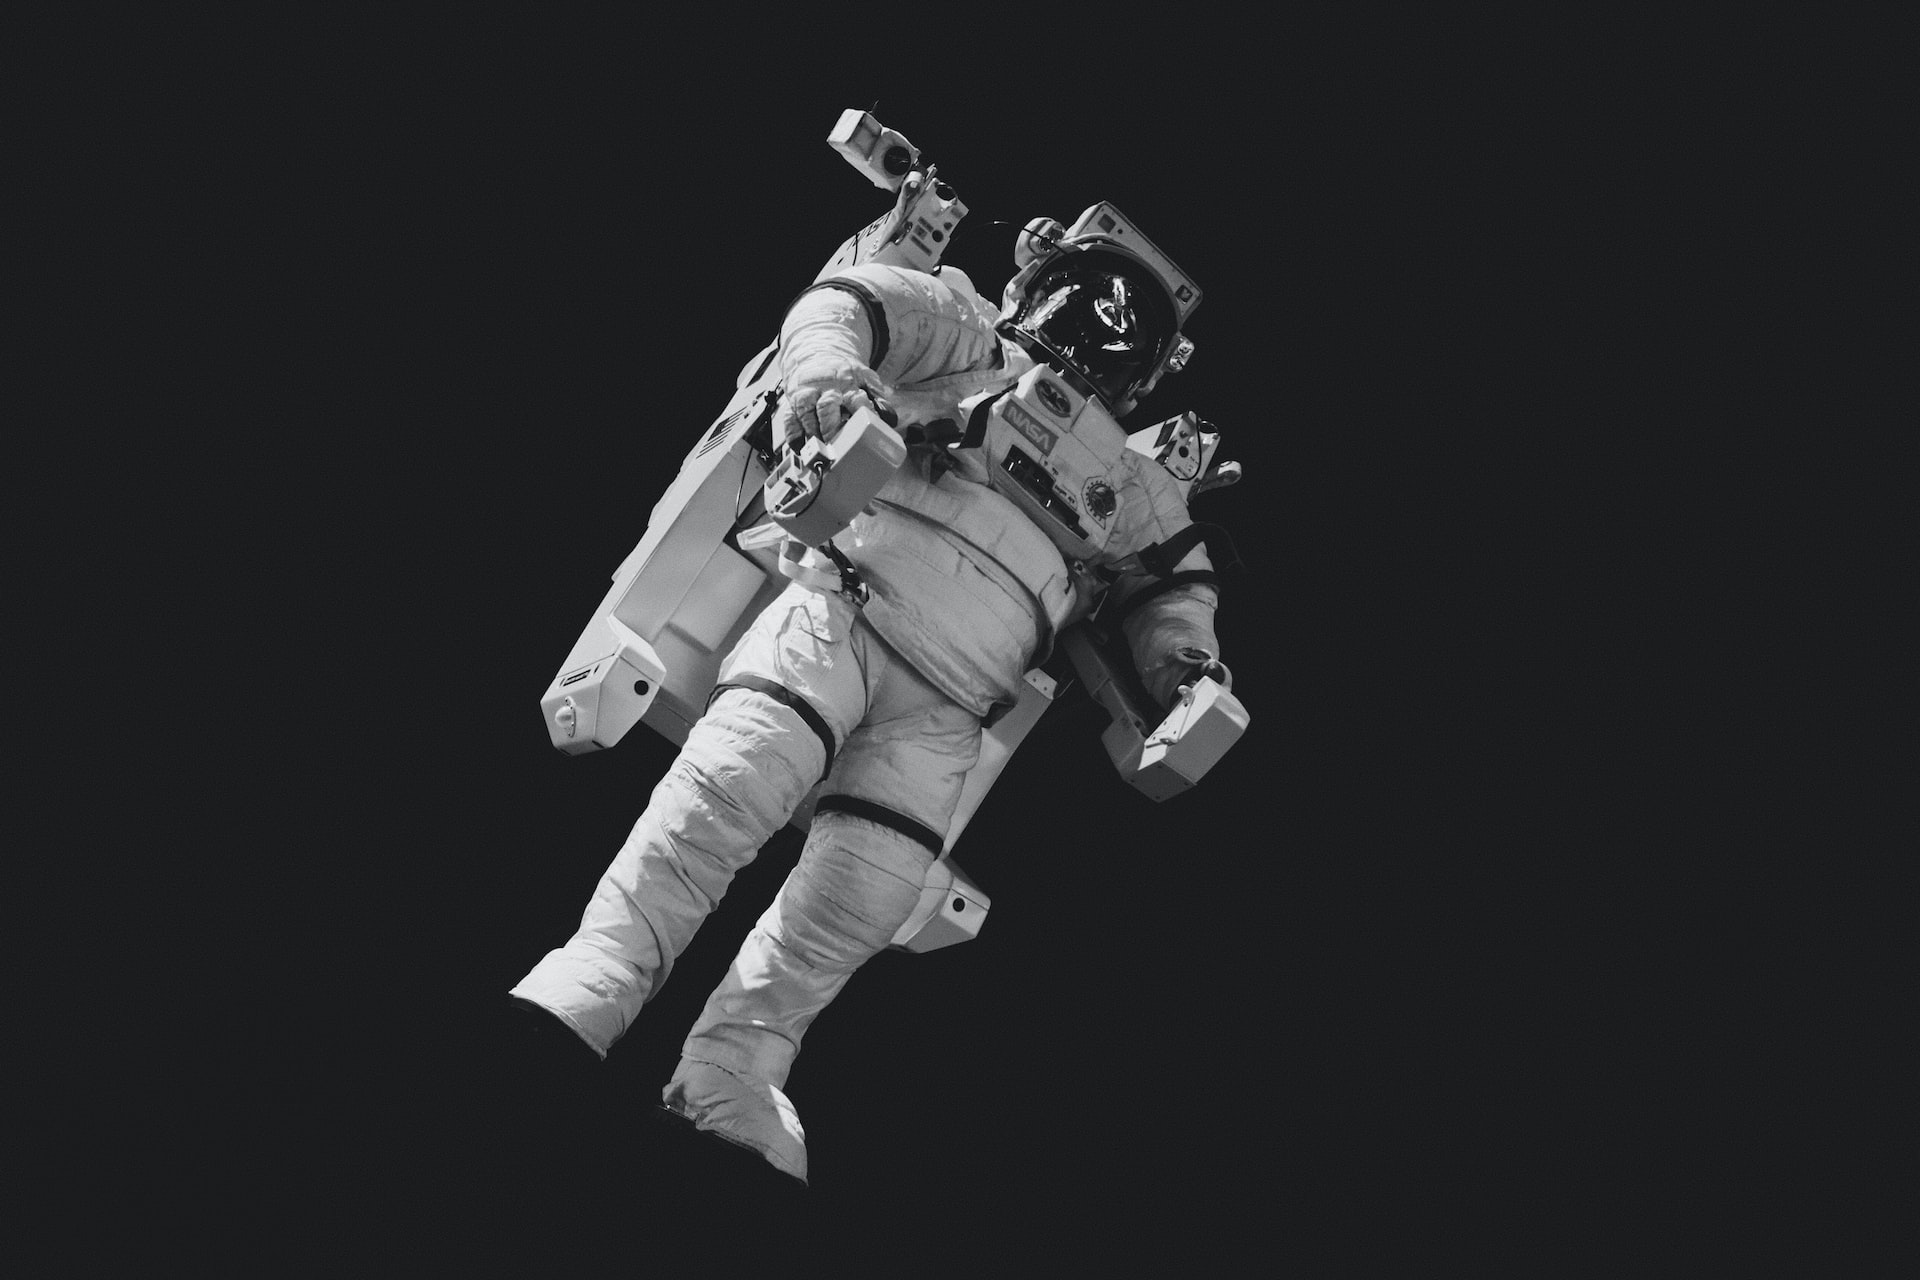 Berufswege: Wie wird man eigentlich Astronaut?